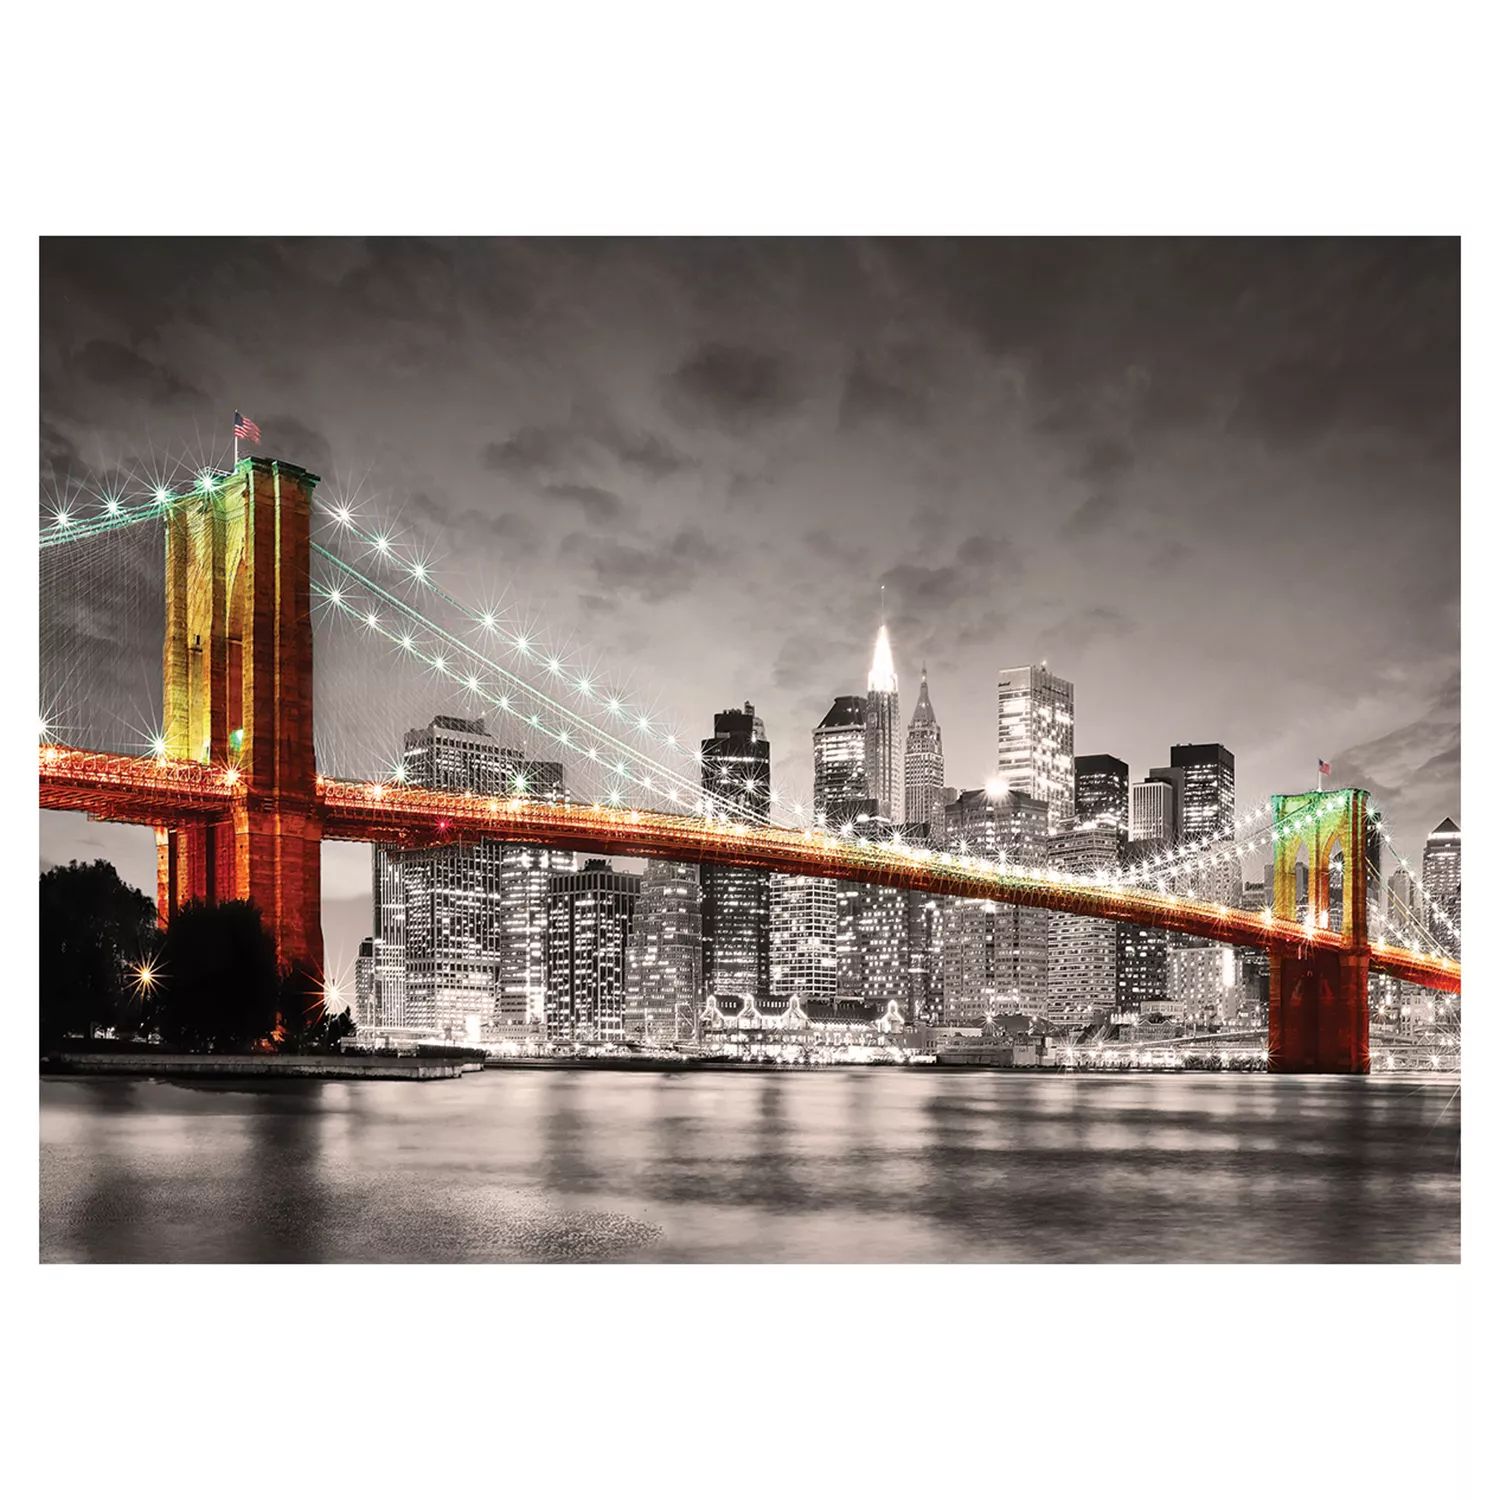 Еврографика 1000 шт. Городская коллекция Нью-Йорк Бруклинский мост Пазл Eurographics пазл 1000 eurographics нью йорк бруклинский мост